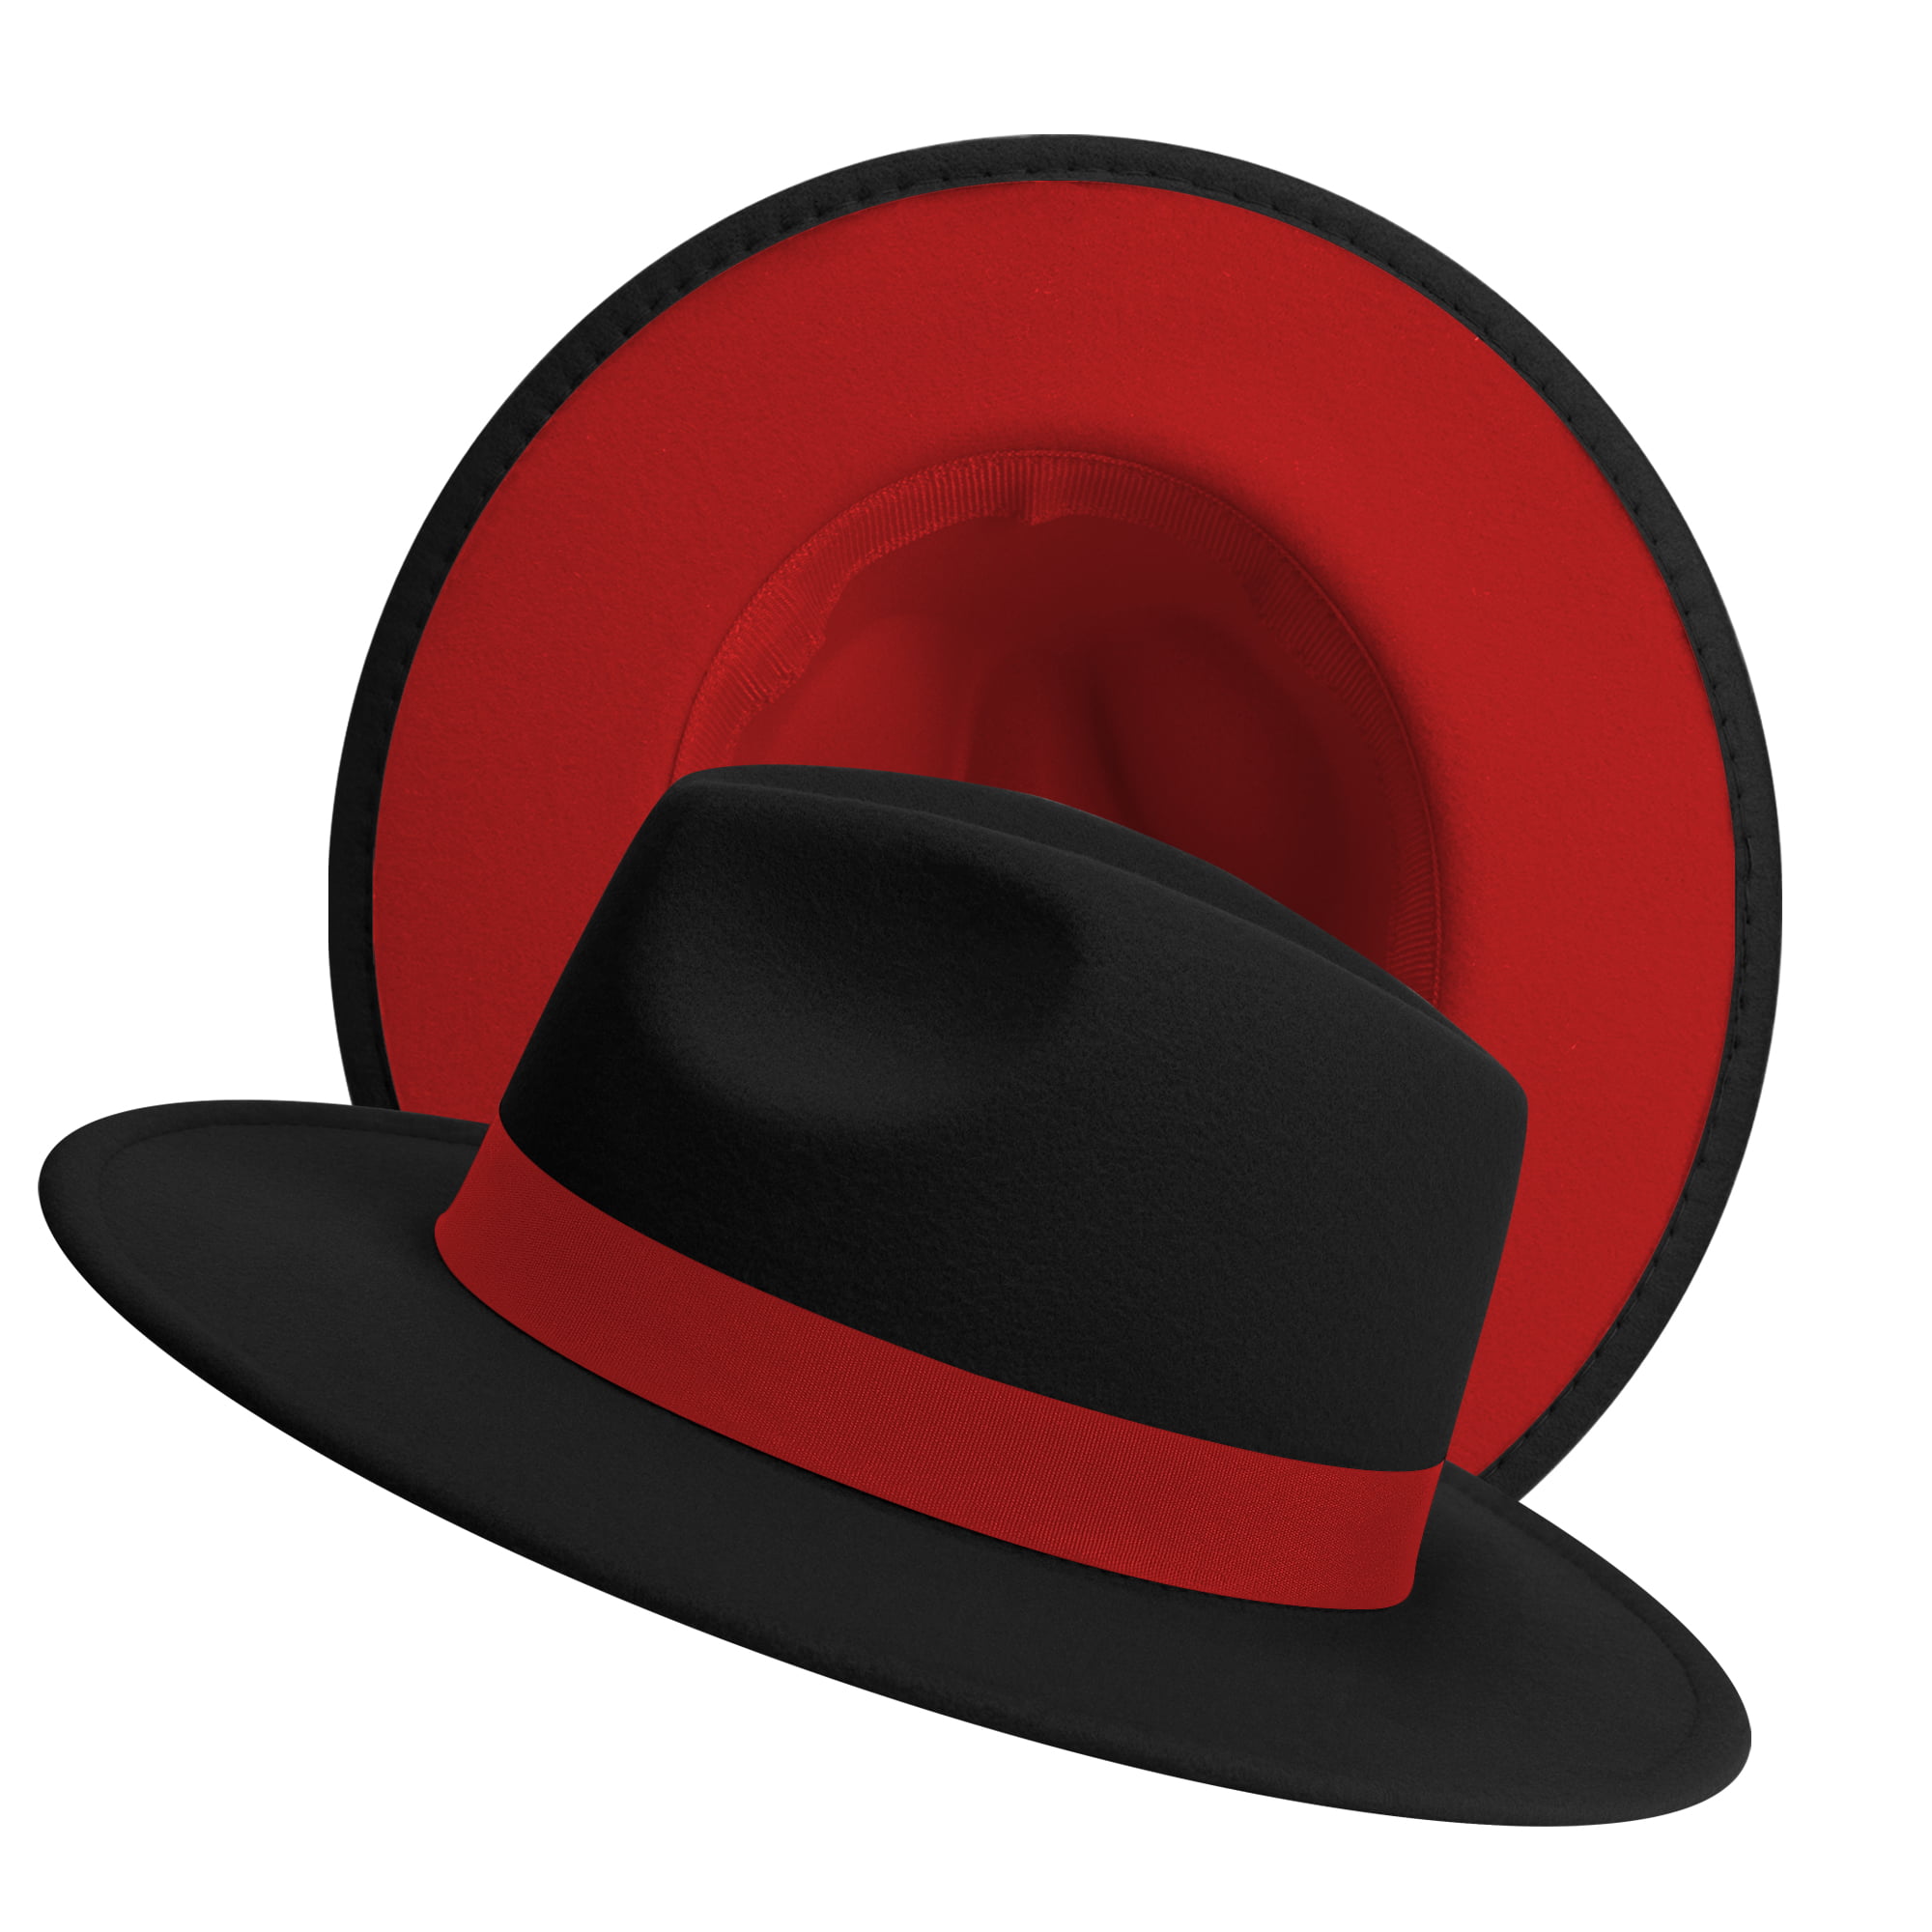 The Trendy Women Felt Wide Brim Fedora Top Hat/ Rust Red